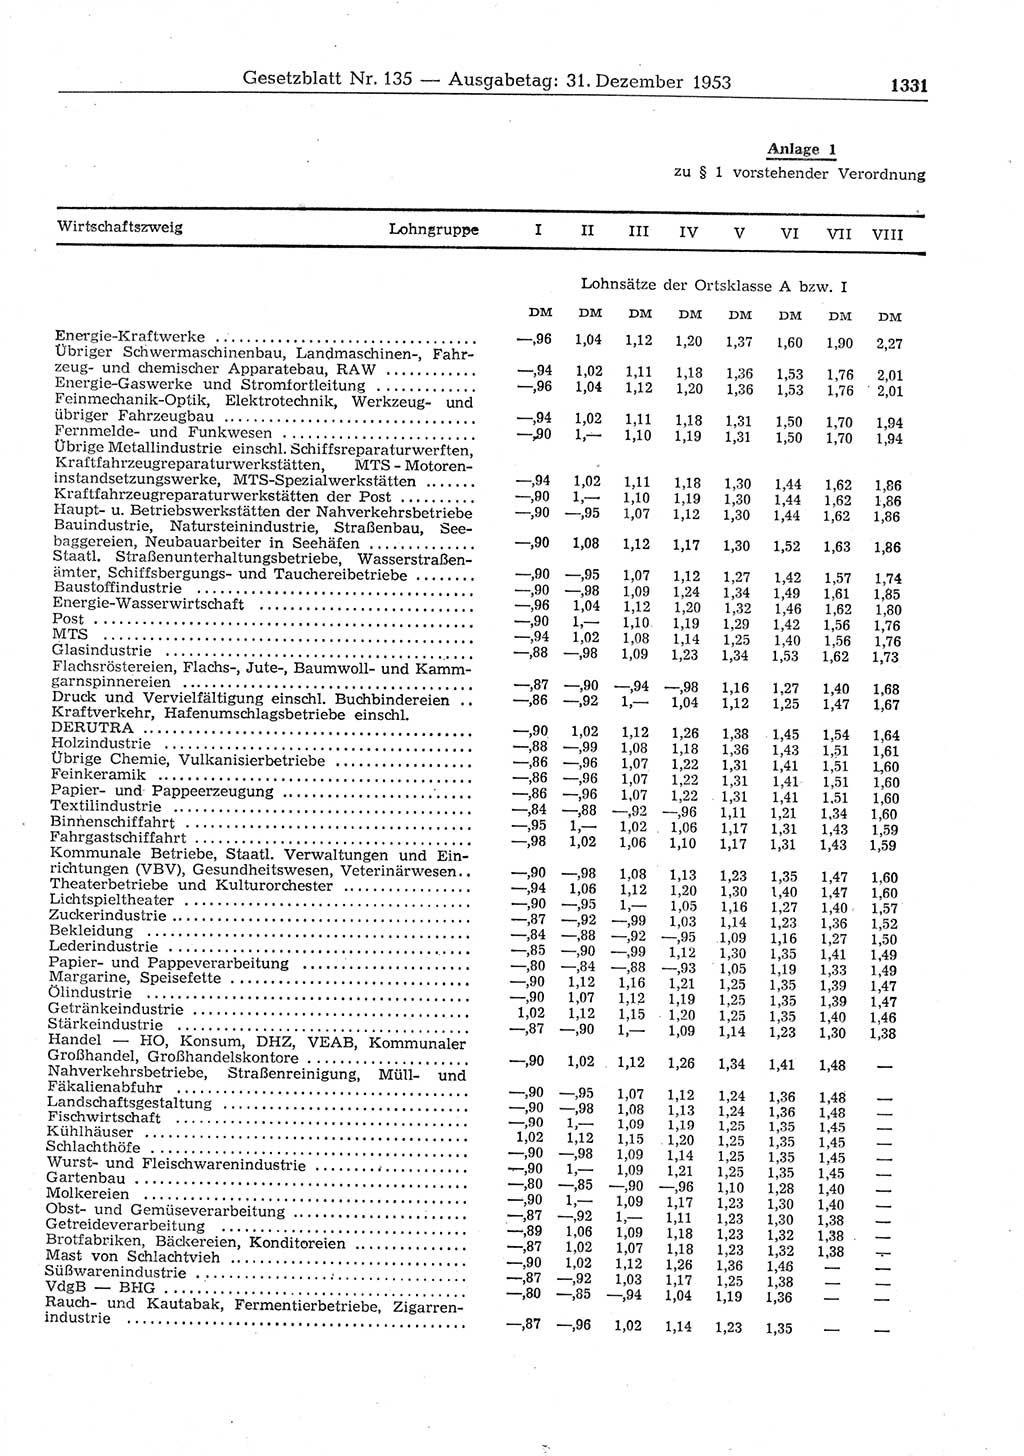 Gesetzblatt (GBl.) der Deutschen Demokratischen Republik (DDR) 1953, Seite 1331 (GBl. DDR 1953, S. 1331)